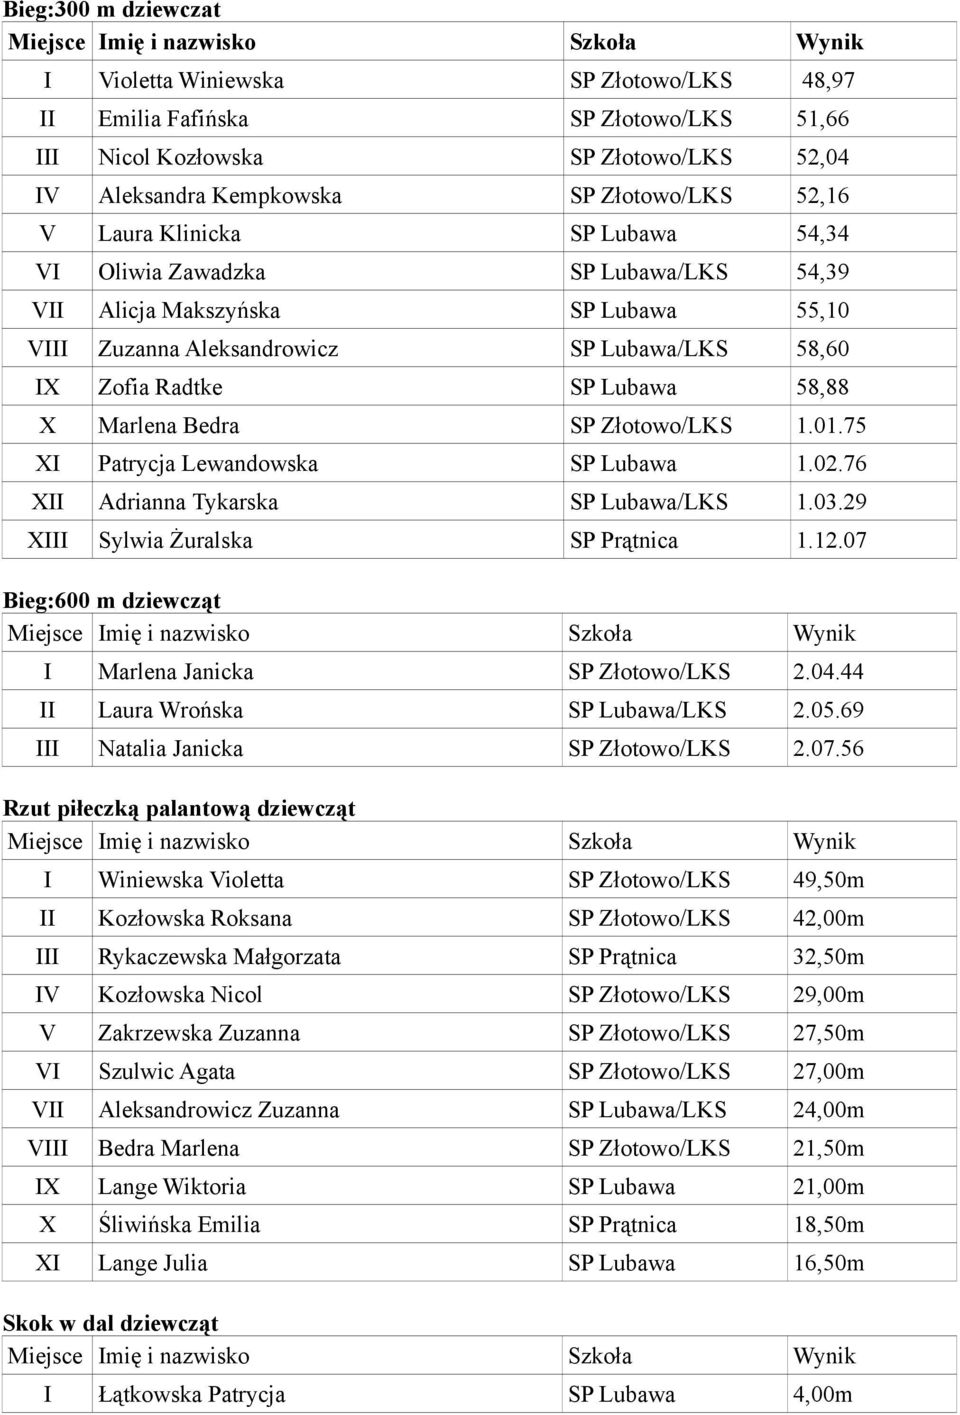 SP Złotowo/LKS 1.01.75 XI Patrycja Lewandowska SP Lubawa 1.02.76 XII Adrianna Tykarska SP Lubawa/LKS 1.03.29 XIII Sylwia Żuralska SP Prątnica 1.12.